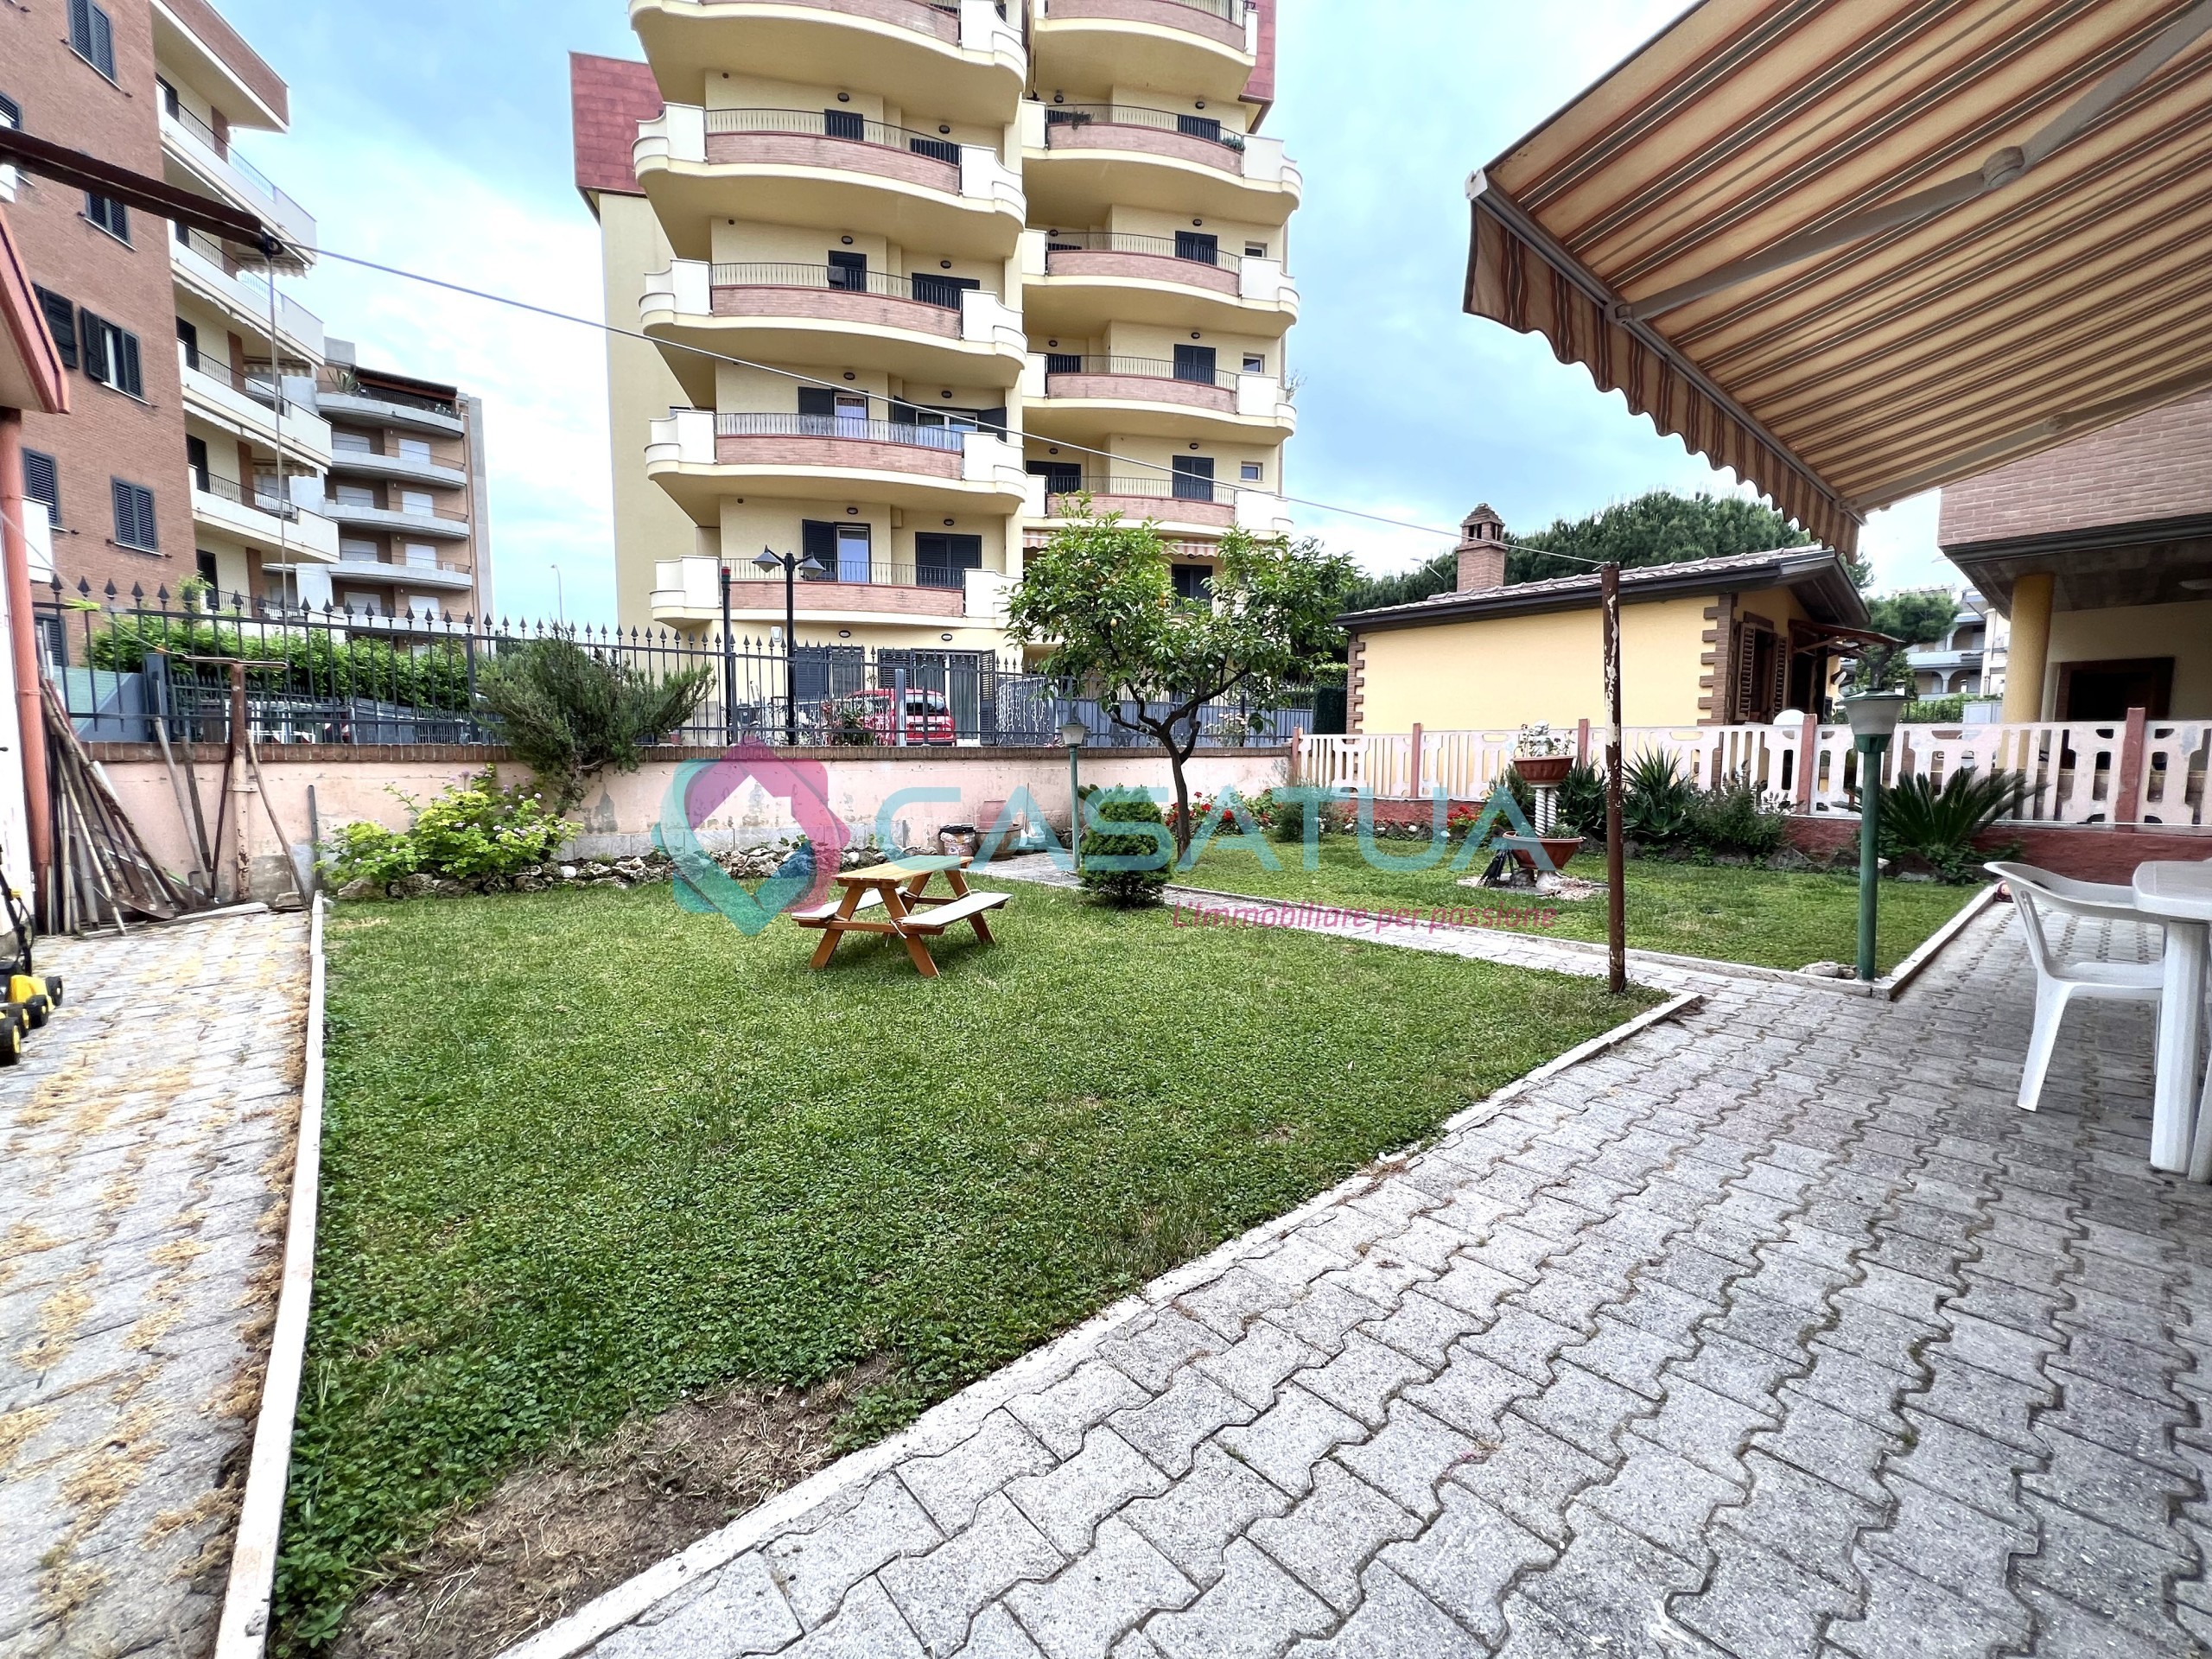 Casa indipendente con giardino in via cesare battisti 178, Alba Adriatica